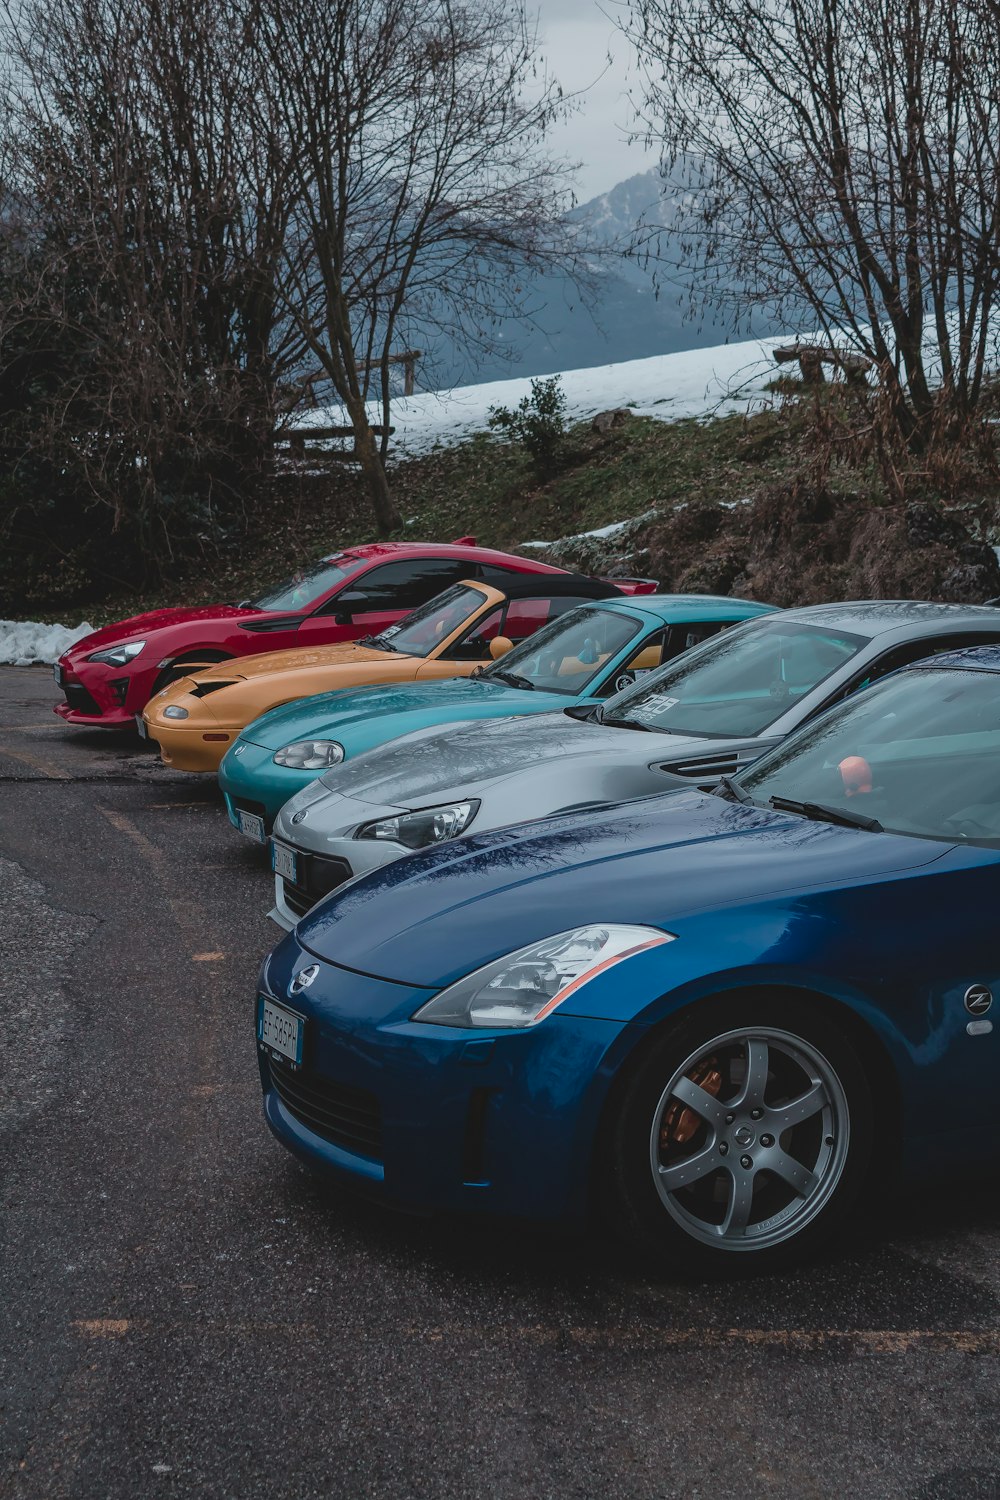 Cinco vehículos de colores variados en la carretera